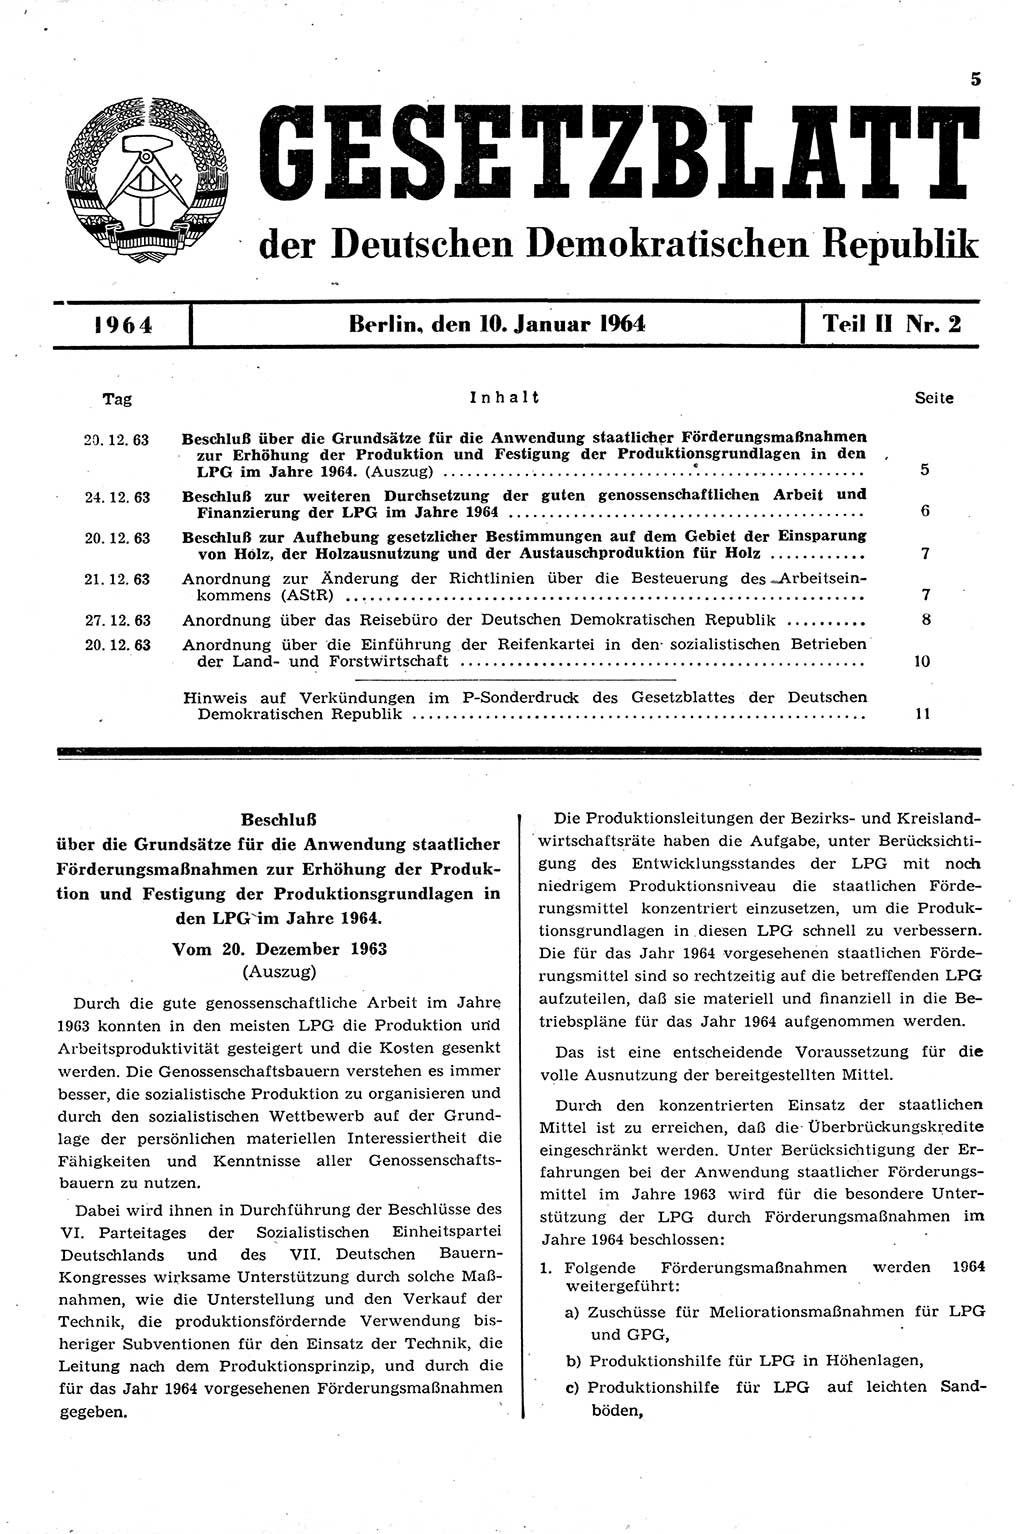 Gesetzblatt (GBl.) der Deutschen Demokratischen Republik (DDR) Teil ⅠⅠ 1964, Seite 5 (GBl. DDR ⅠⅠ 1964, S. 5)